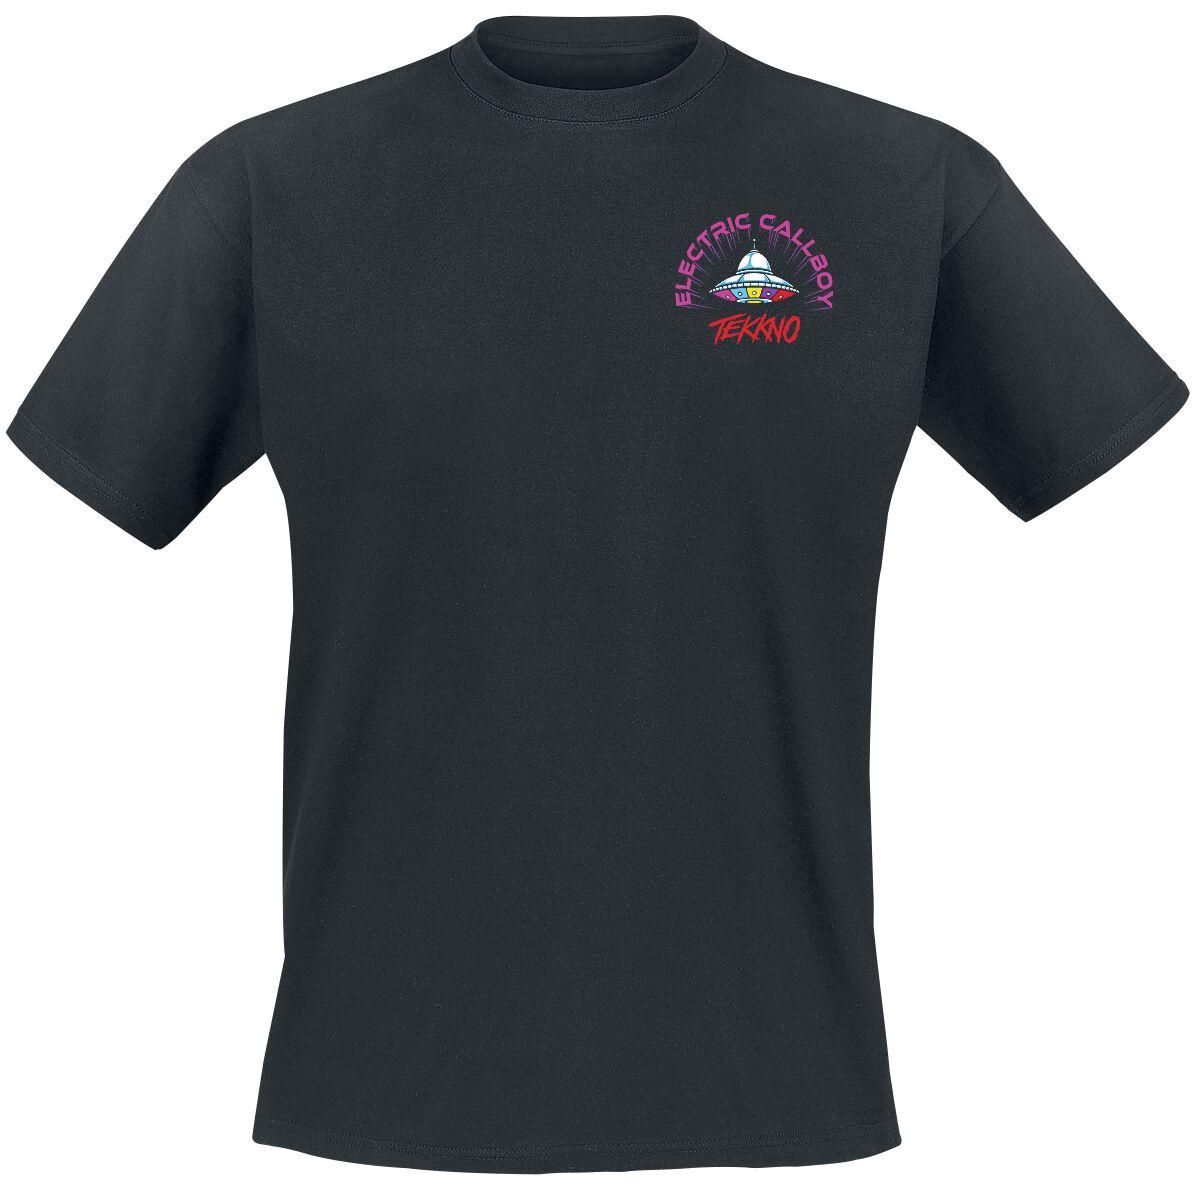 Electric Callboy T-Shirt - Tekkno Pinball - S bis 3XL - für Männer - Größe XXL - schwarz  - Lizenziertes Merchandise!